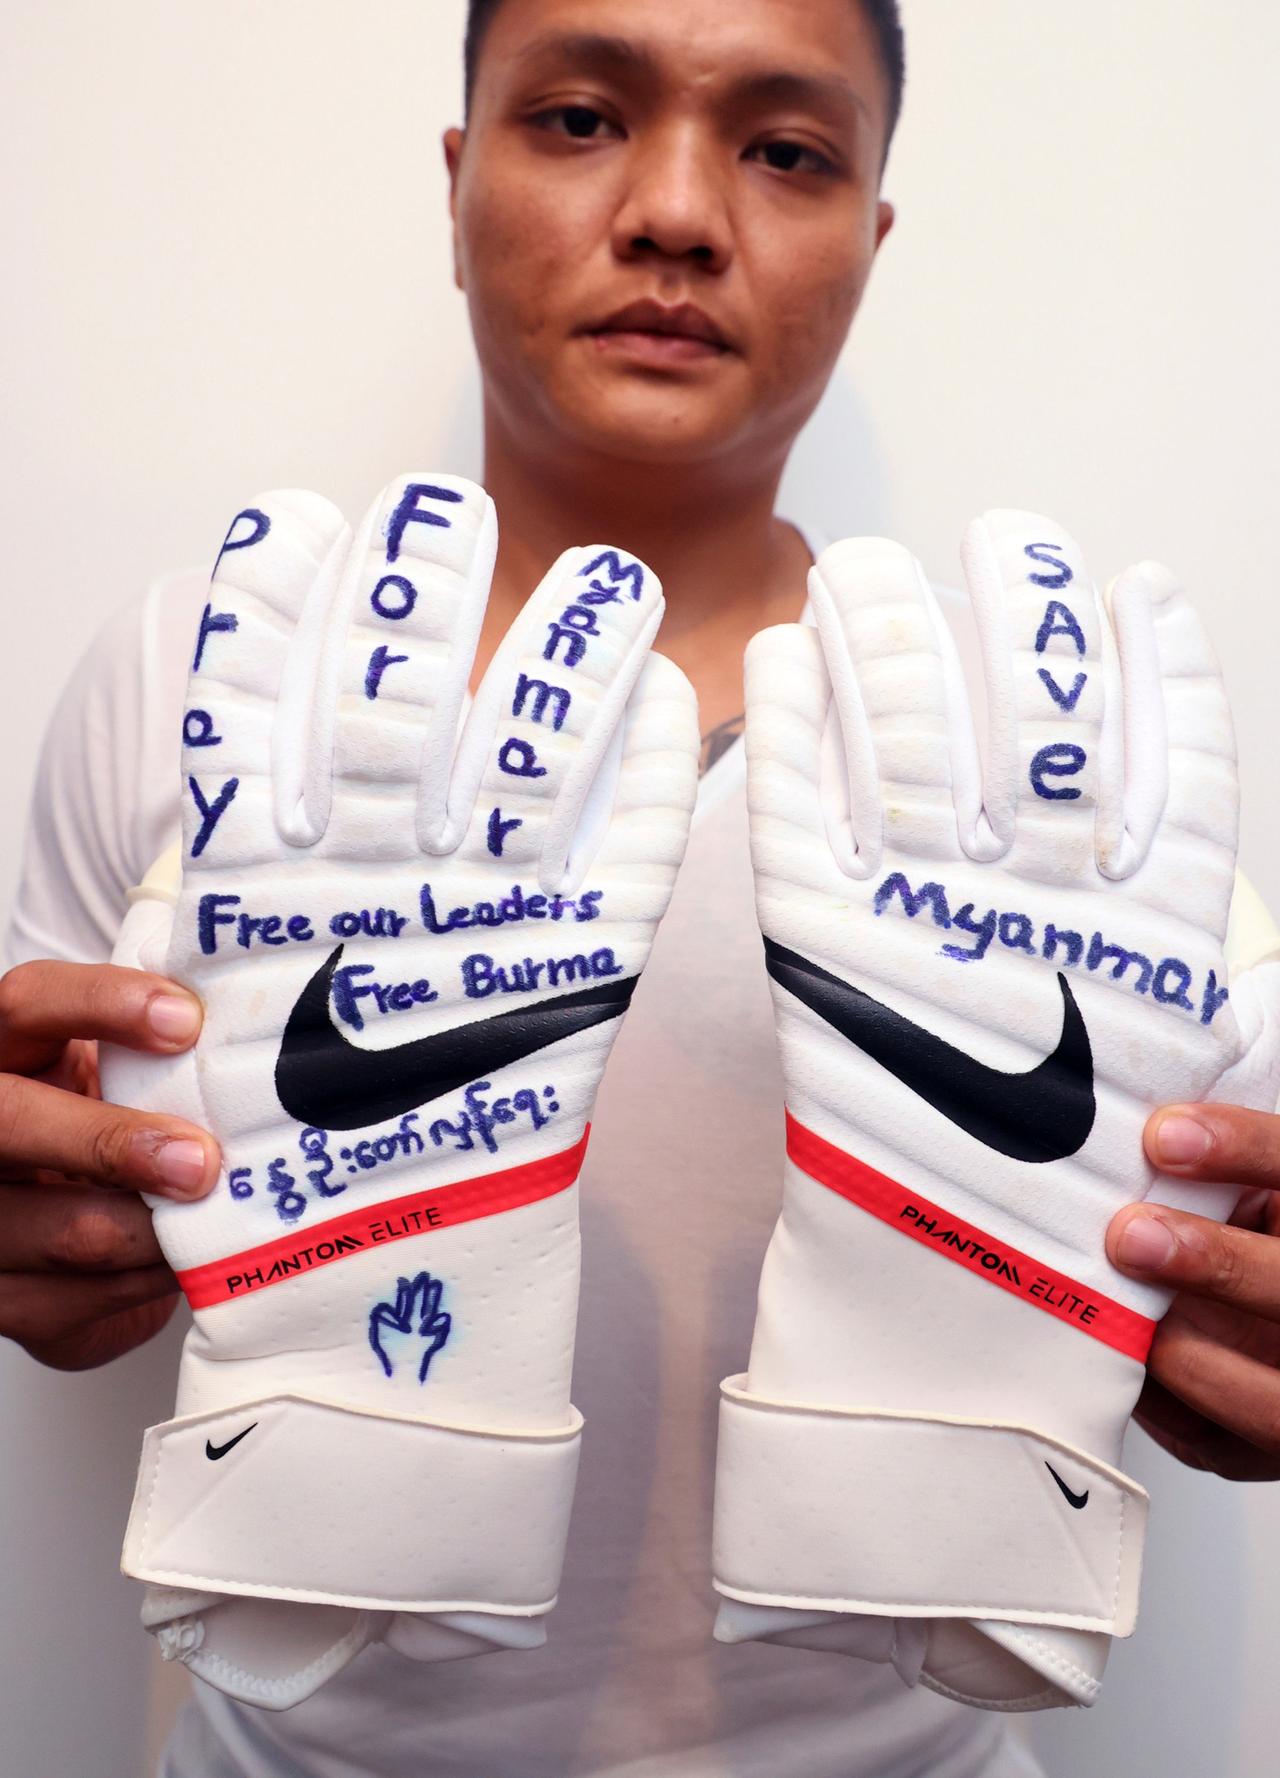 Der ehemalige Fußballnationaltorhüter Myanmars, Pyae Lyan Aung, hält seine Torwarthandschuhe in die Kamera. Auf ihnen steht "Freies Myanmar" geschrieben.